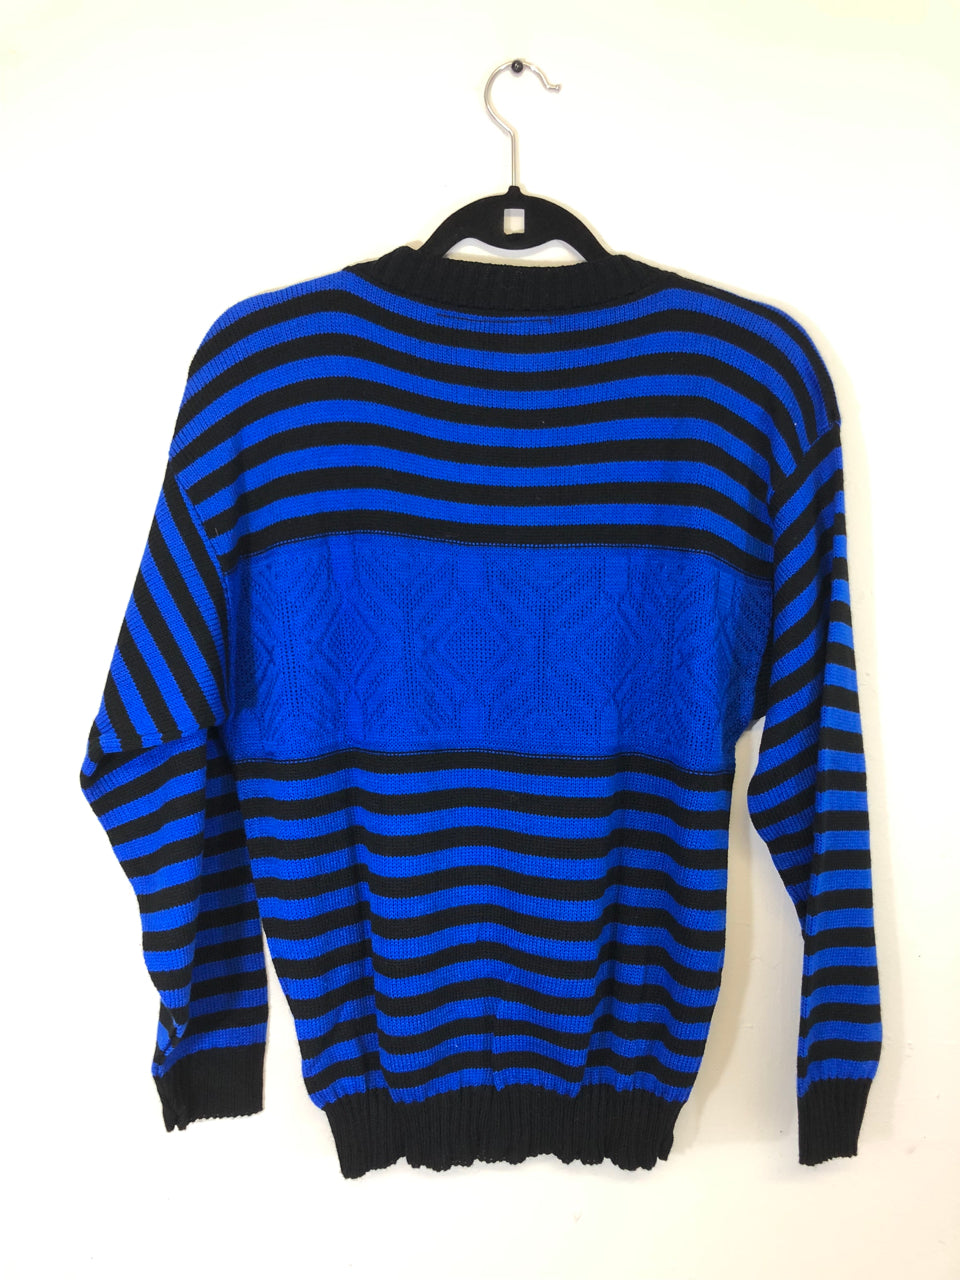 Helen Sue Striped Sweater (Deadstock)